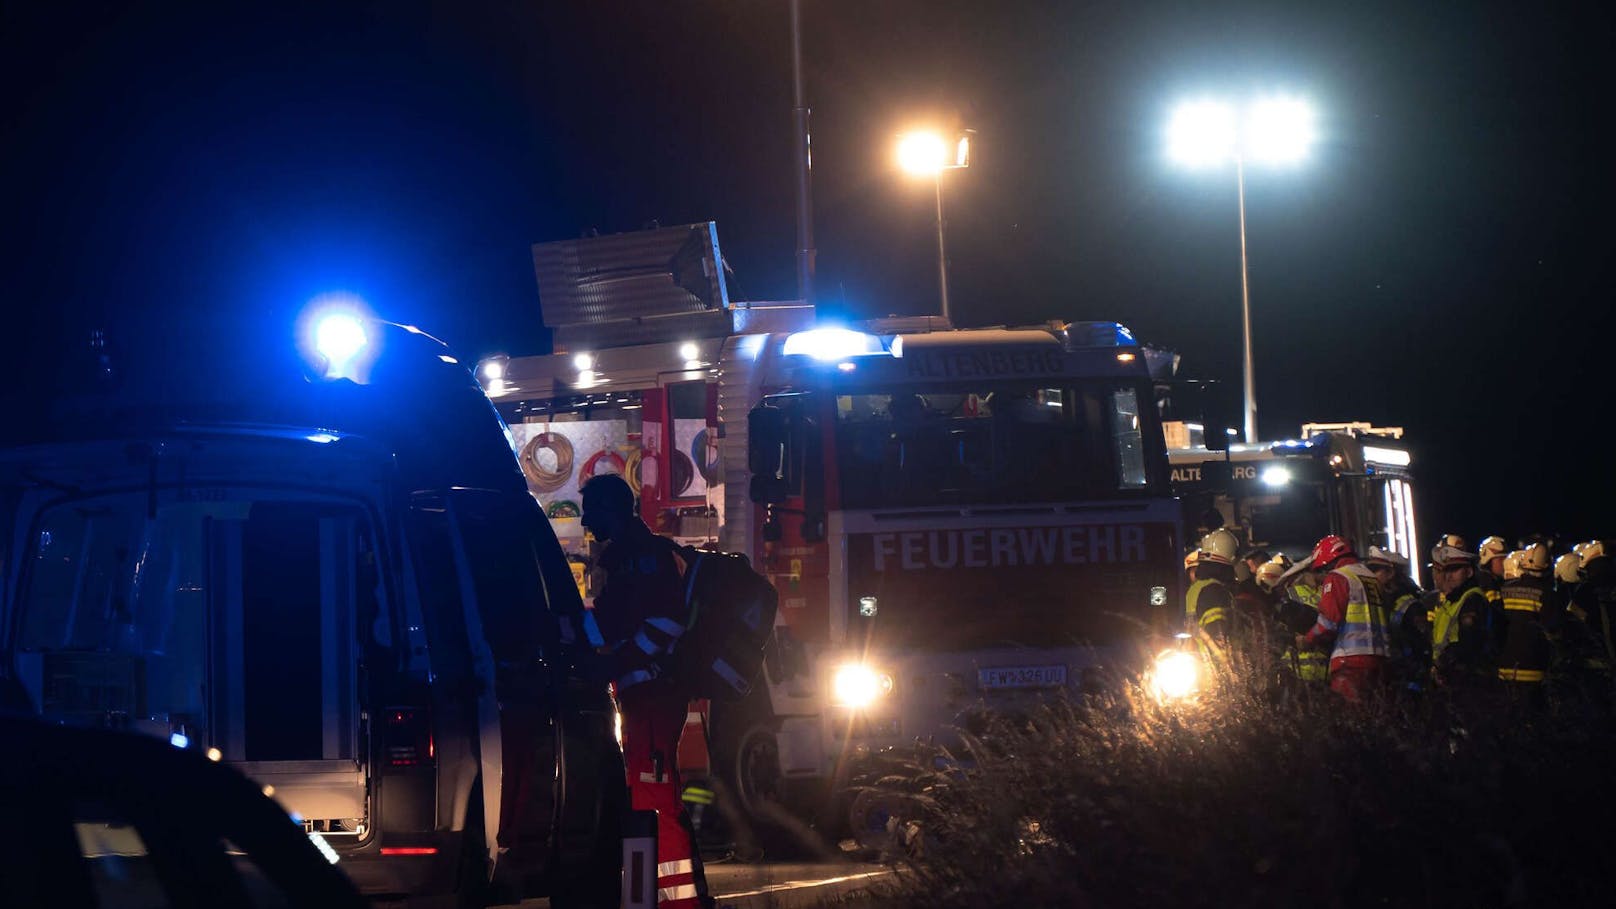 Tragödie am Montagabend in Oberösterreich! Bei einem Frontal-Zusammenstoß&nbsp; in Altenberg bei Linz sind zwei Personen ums Leben gekommen. Für einen 36-Jährigen und eine 16-Jährige kam dabei jede Hilfe zu spät.